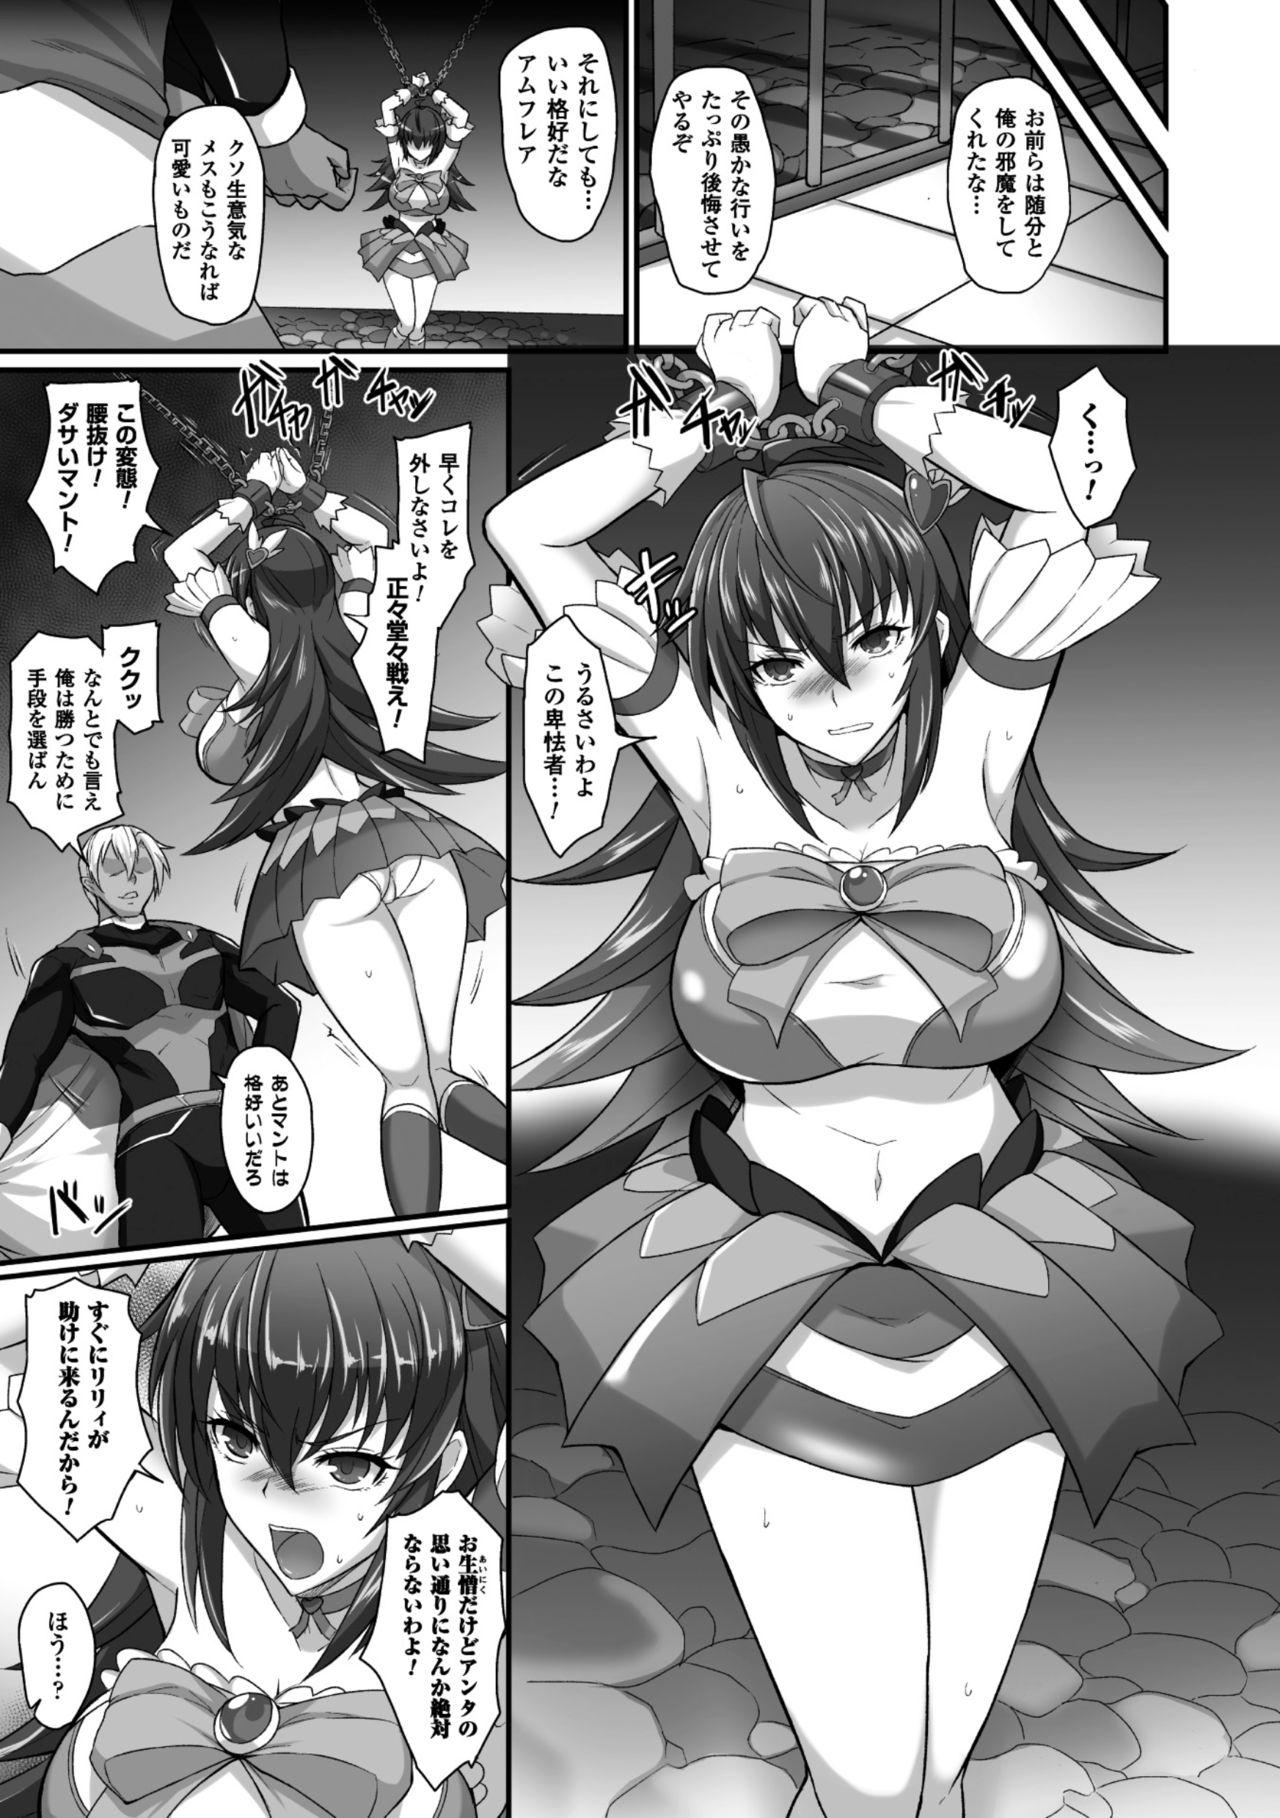 Seigi no Heroine Kangoku File Vol. 6 26